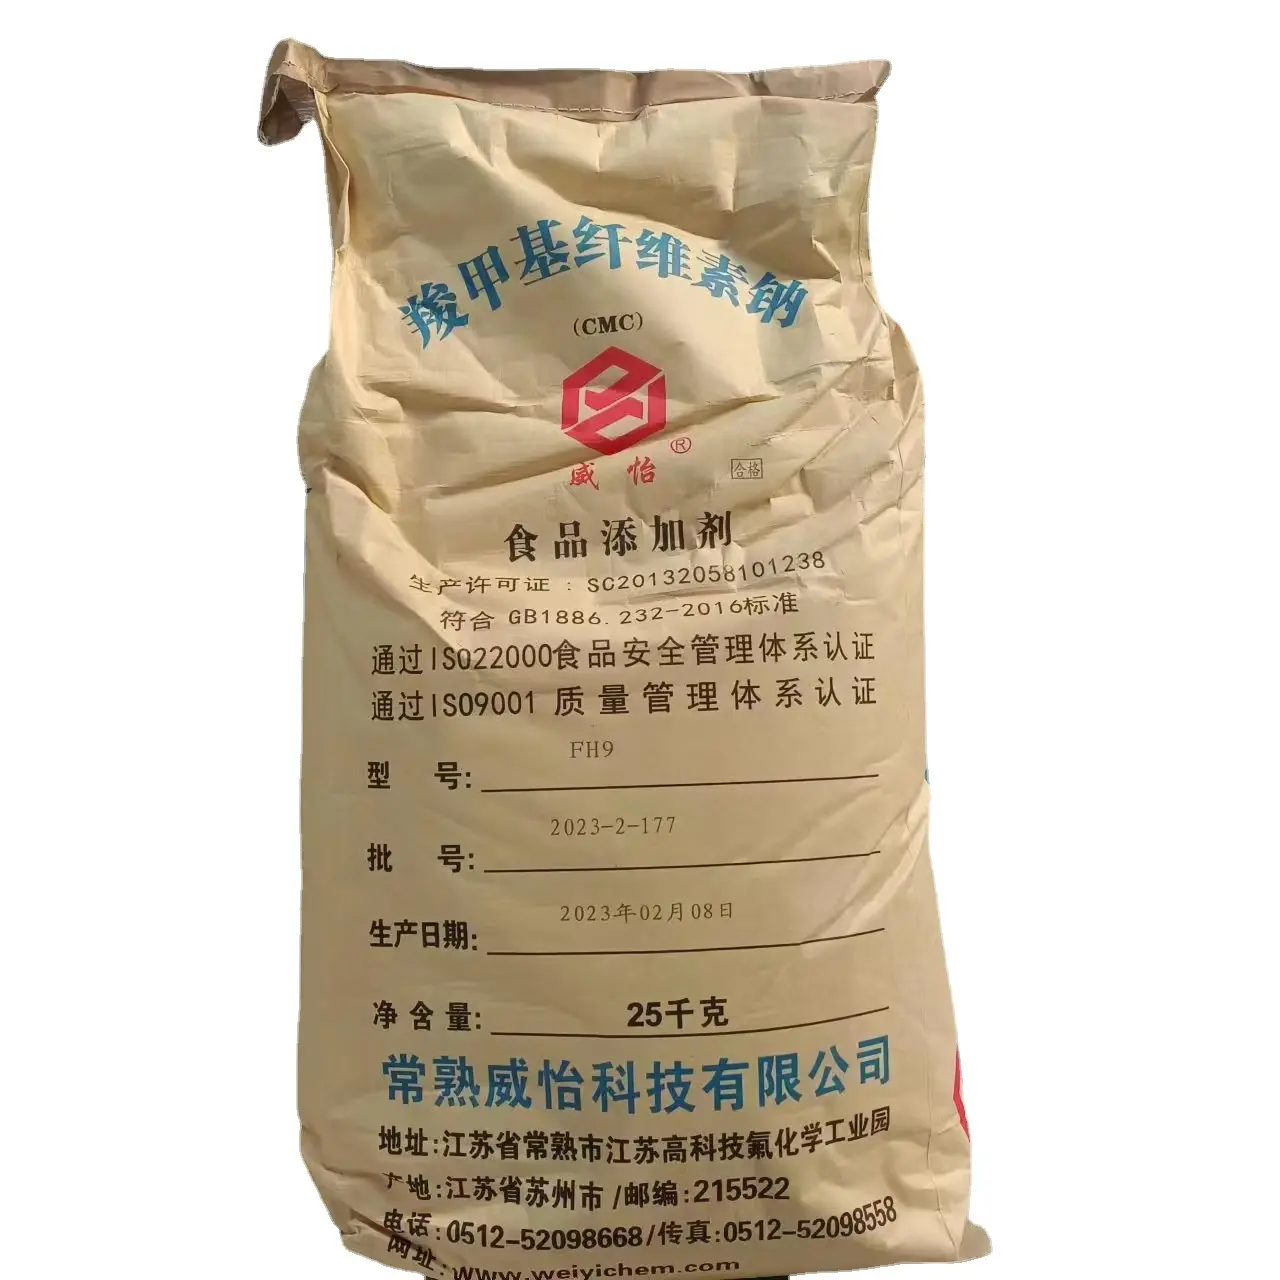 중국에서 뜨거운 판매 식품 등급 CMC 카르 복시 메틸 셀룰로오스 분말 기계